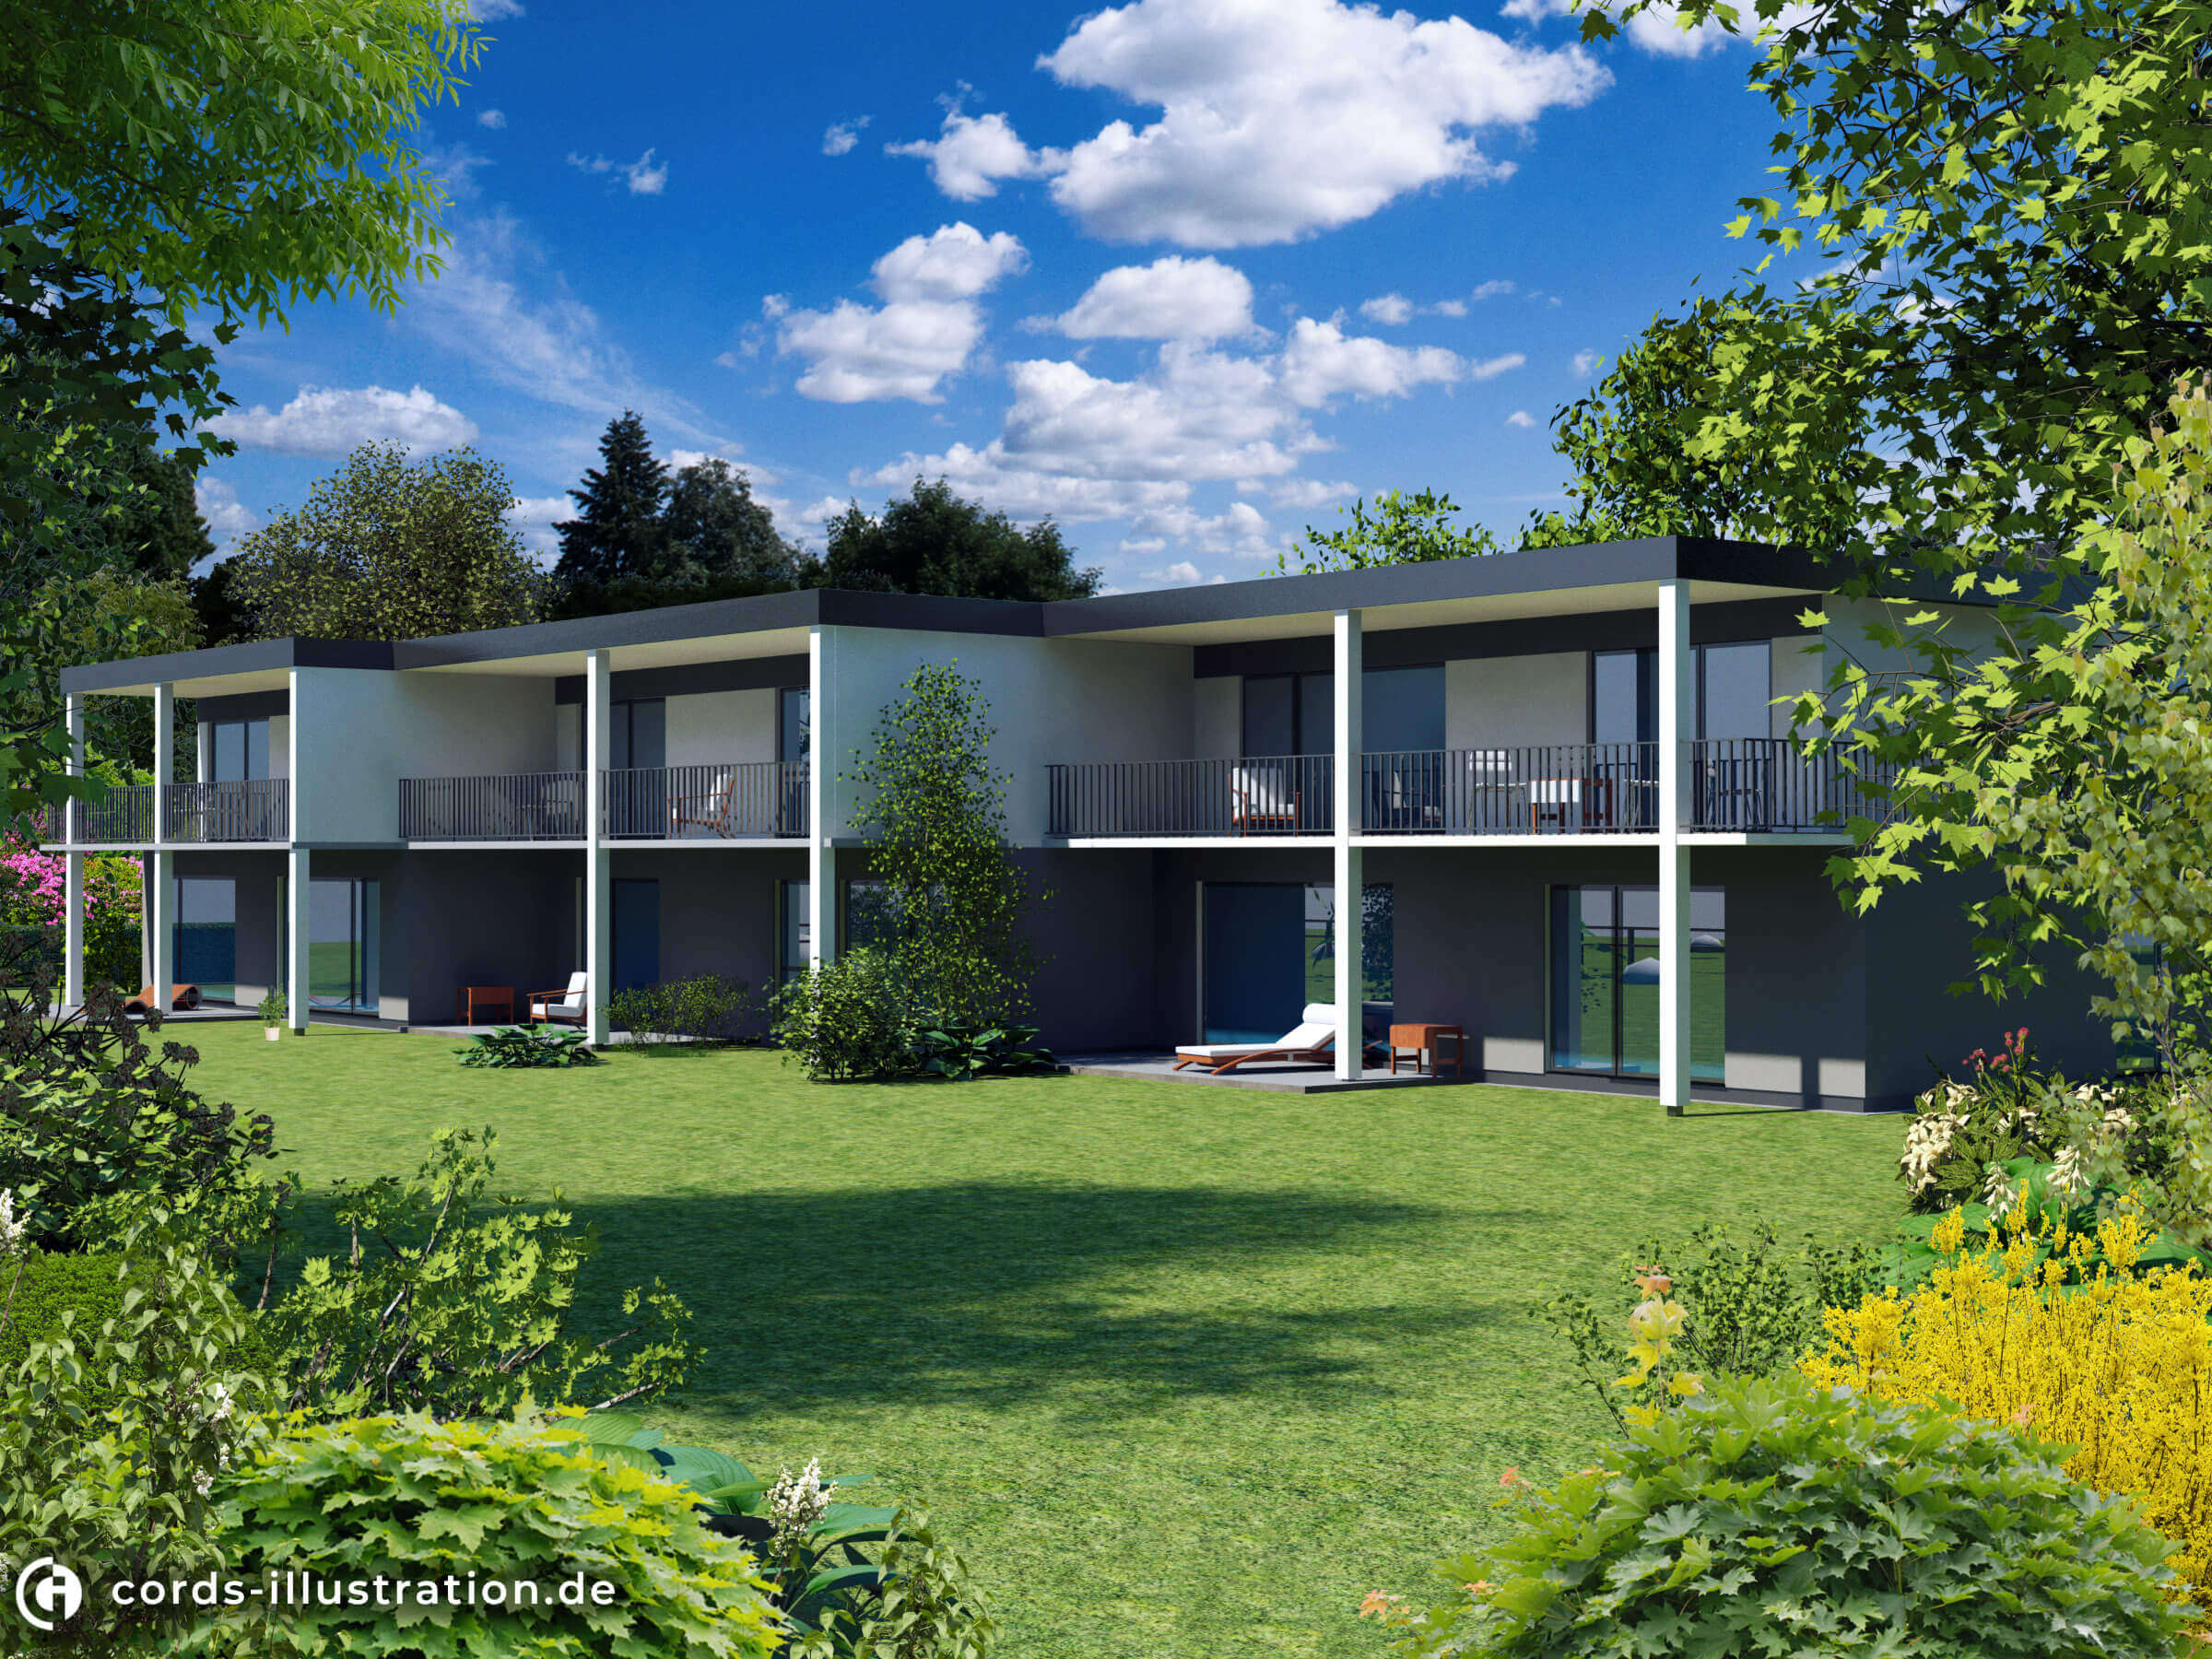 Das Bild zeigt eine Visualisierung eines Mehrfamilienhauses mit Gartenanlage